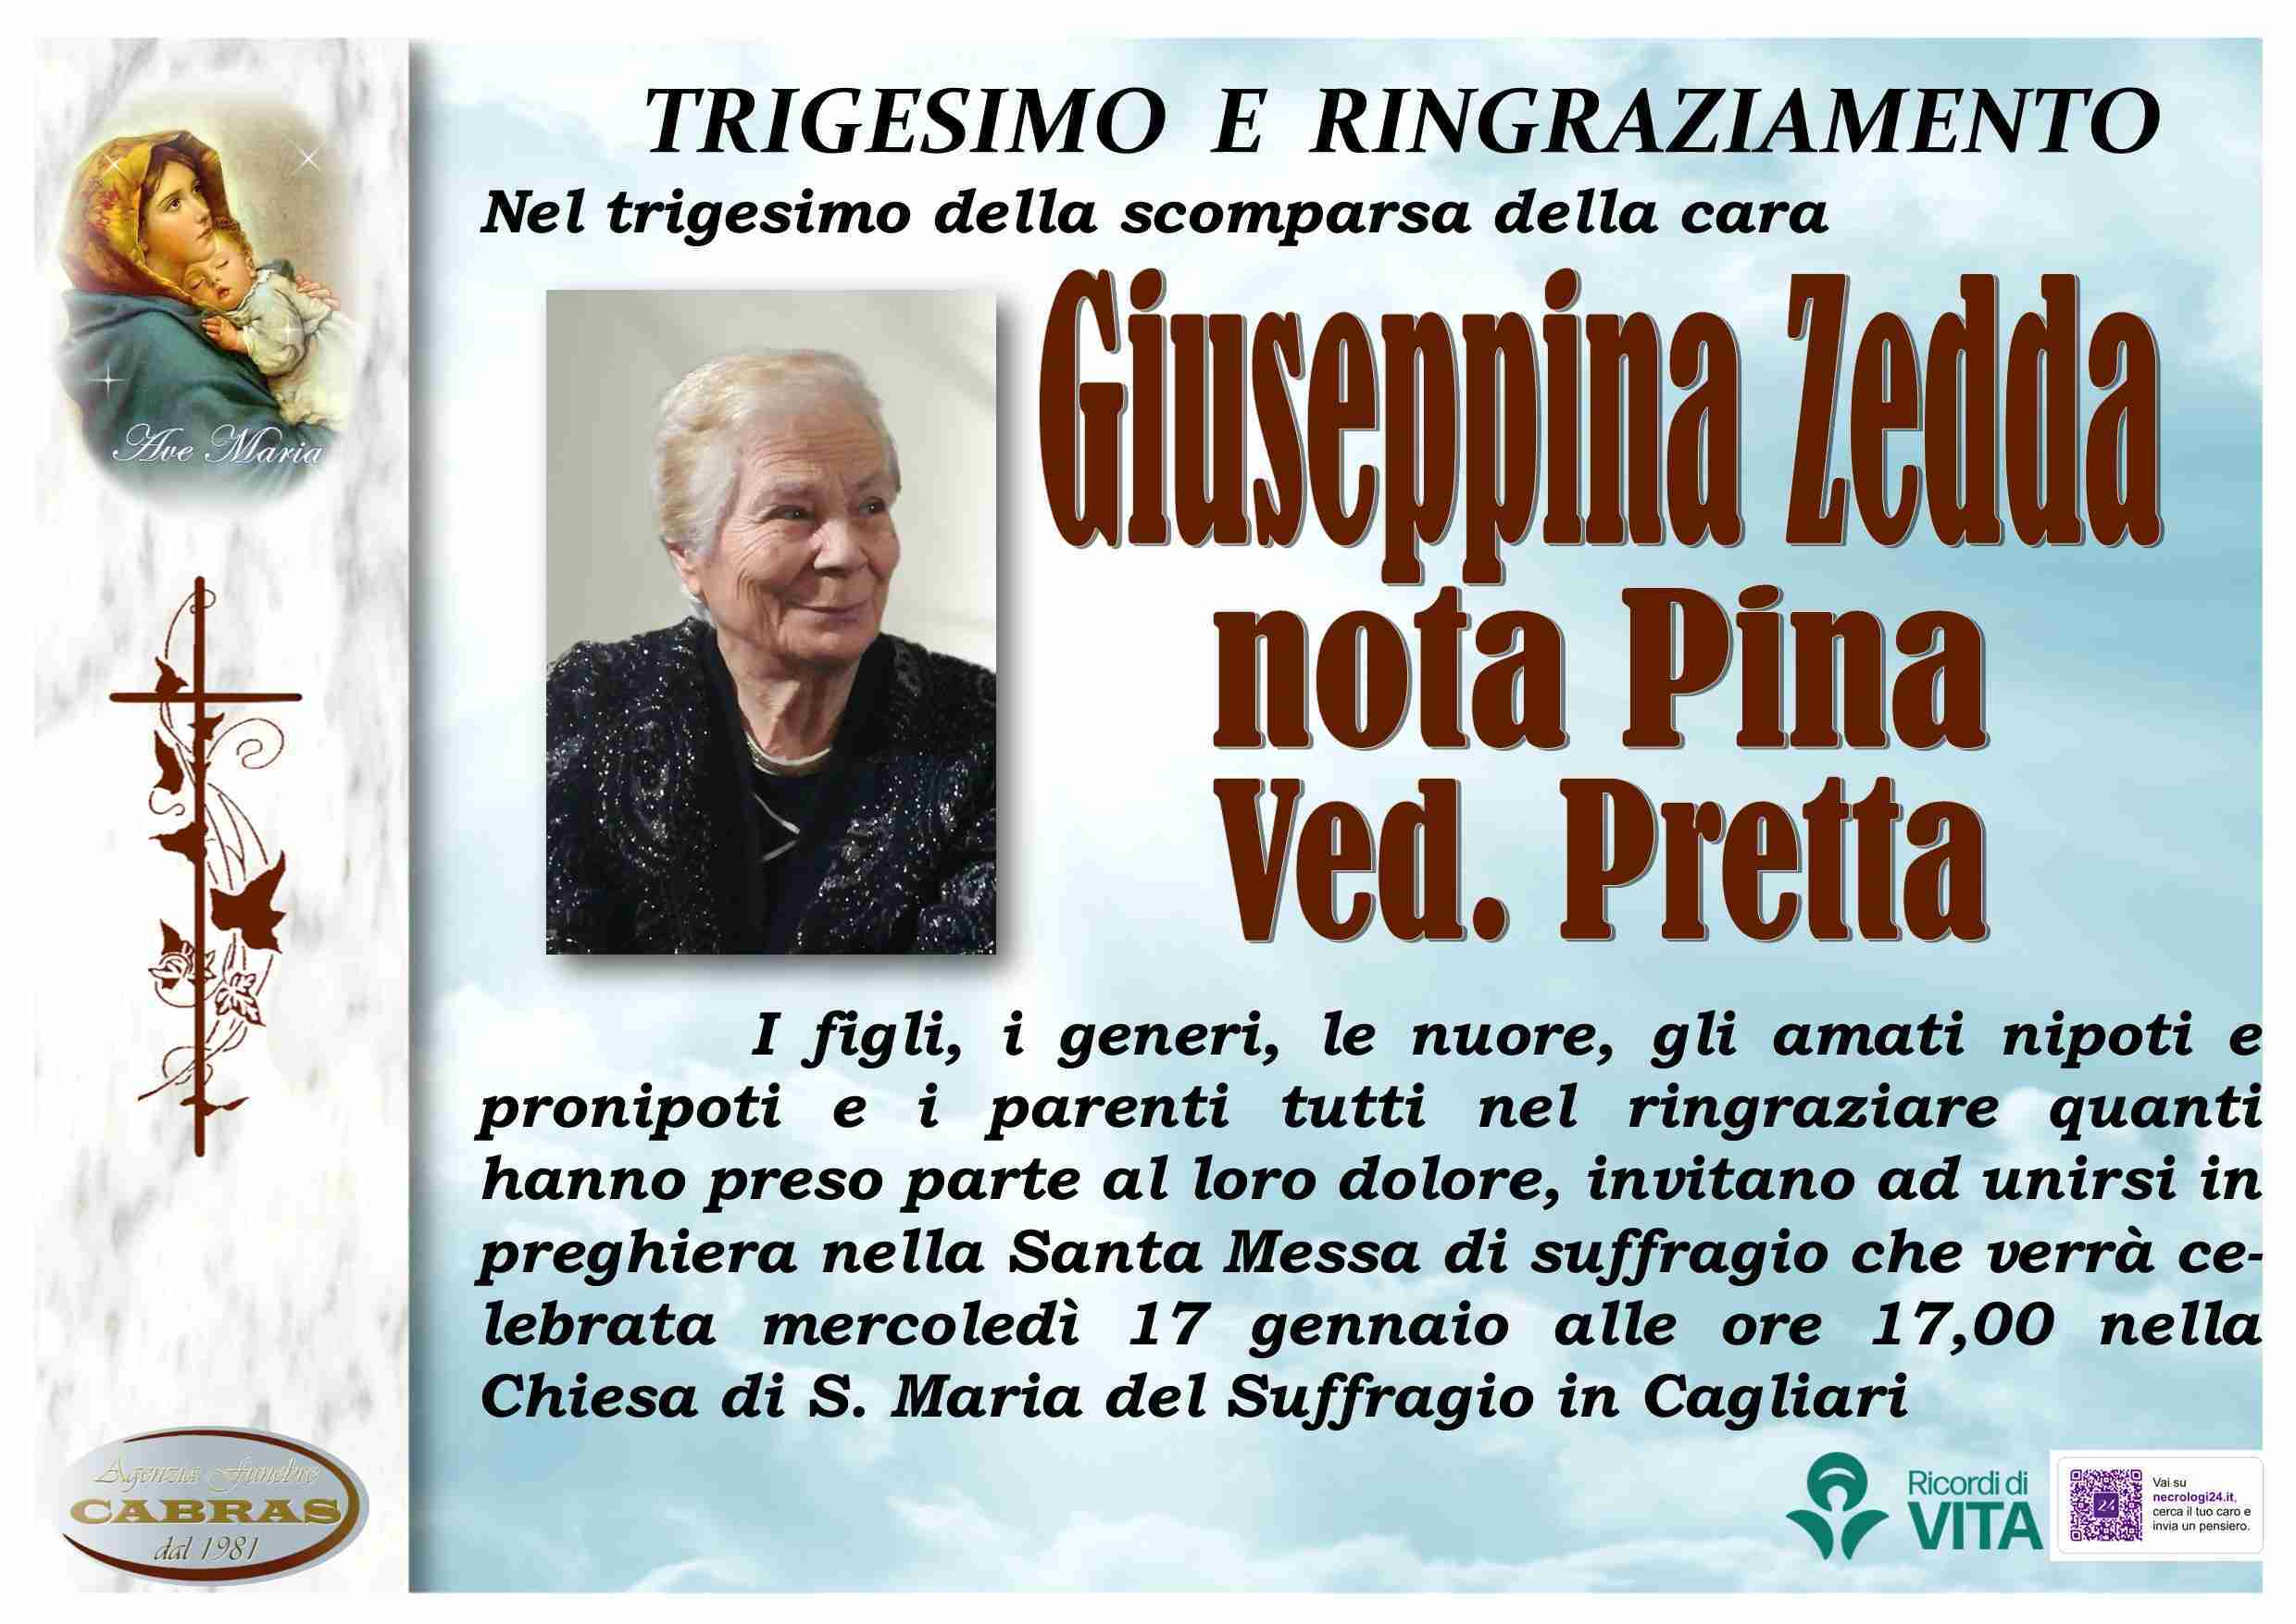 Giuseppina Zedda